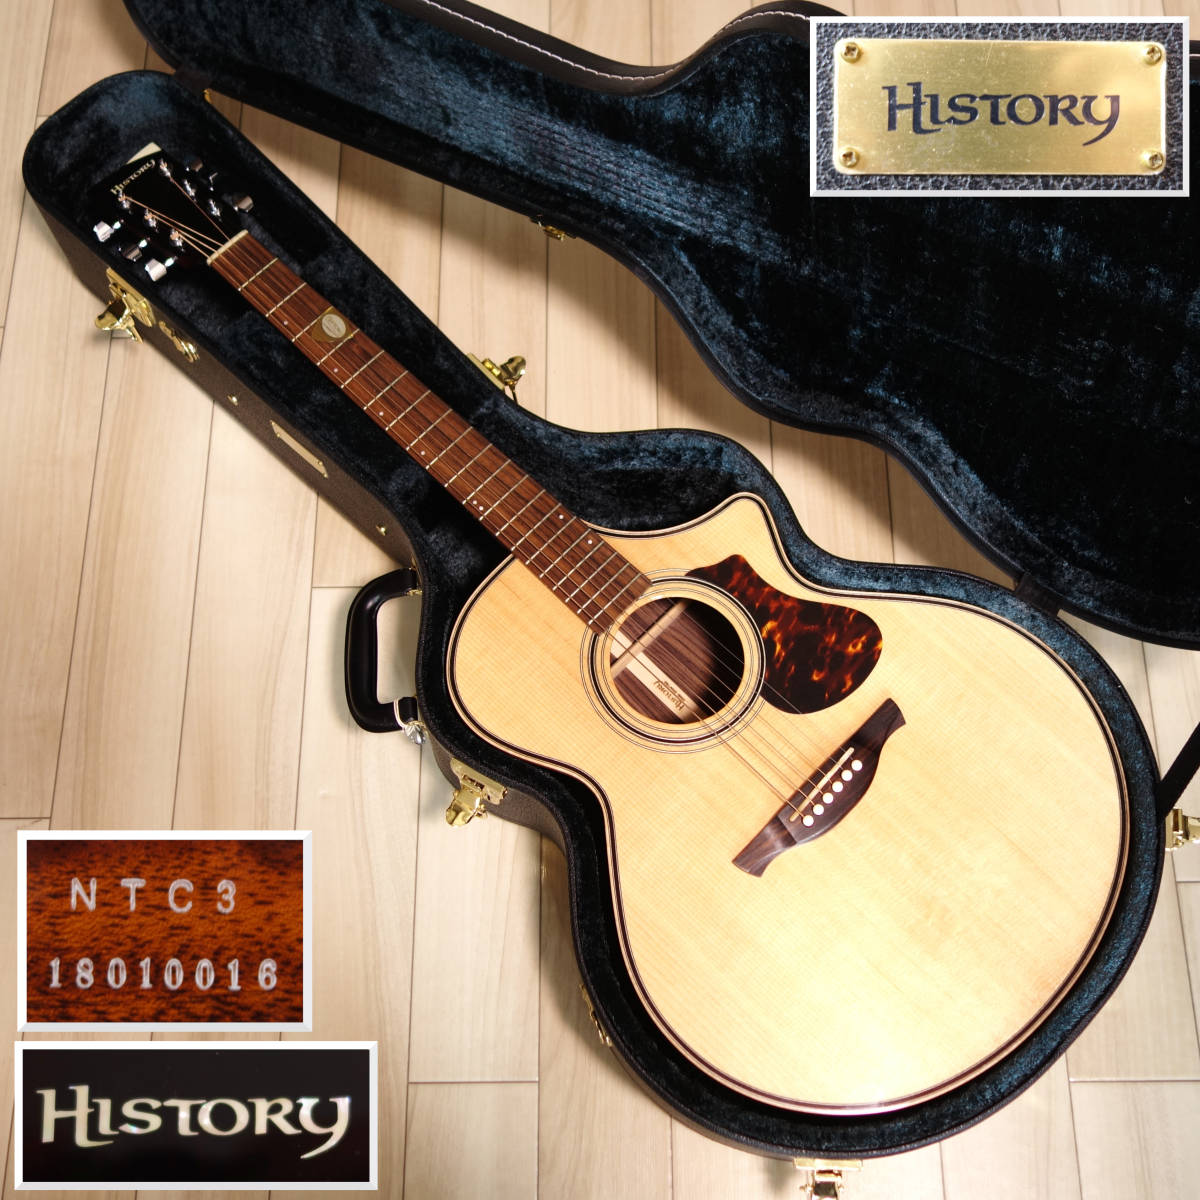 ヤフオク! -「history nt」(アコースティックギター) (ギター)の落札